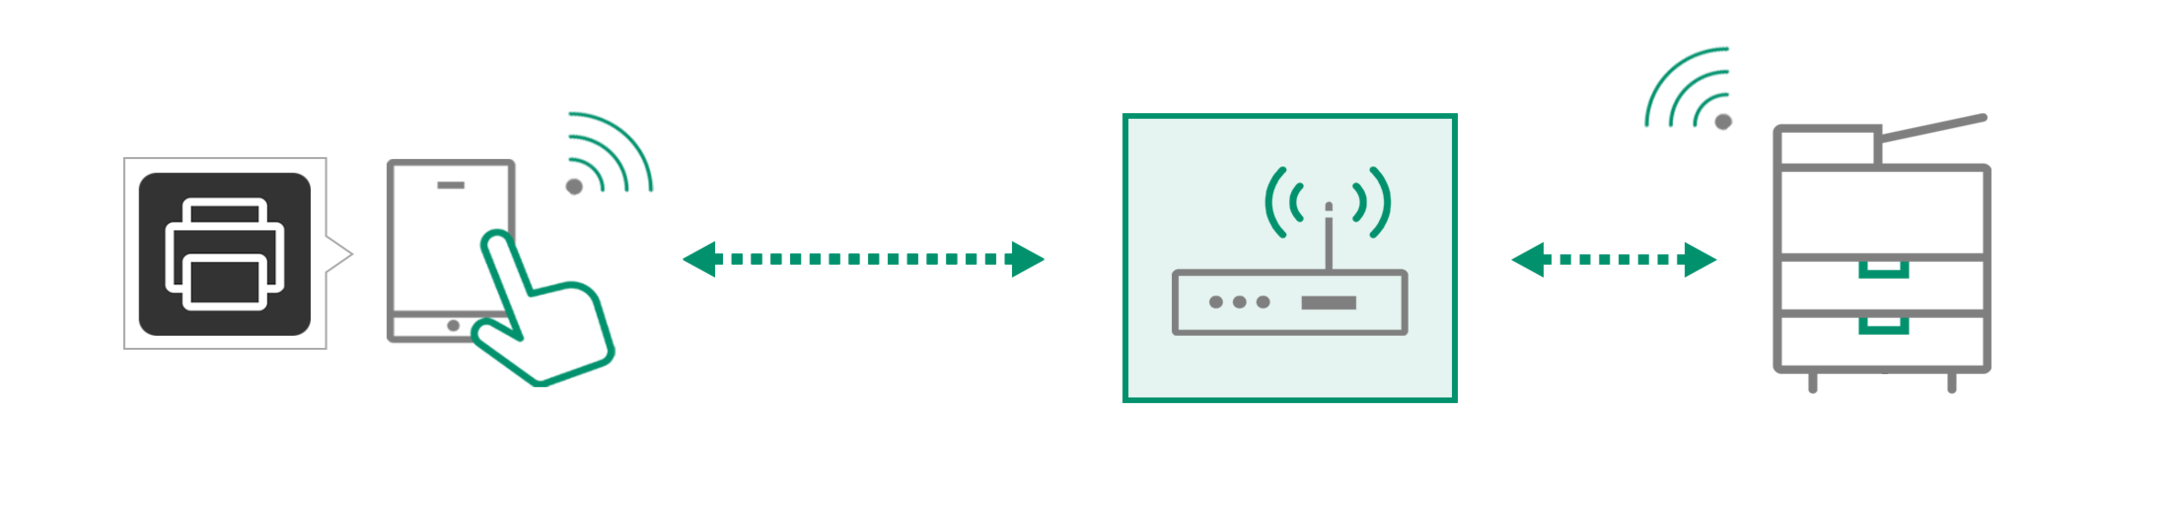 無線LANアクセスポイント環境